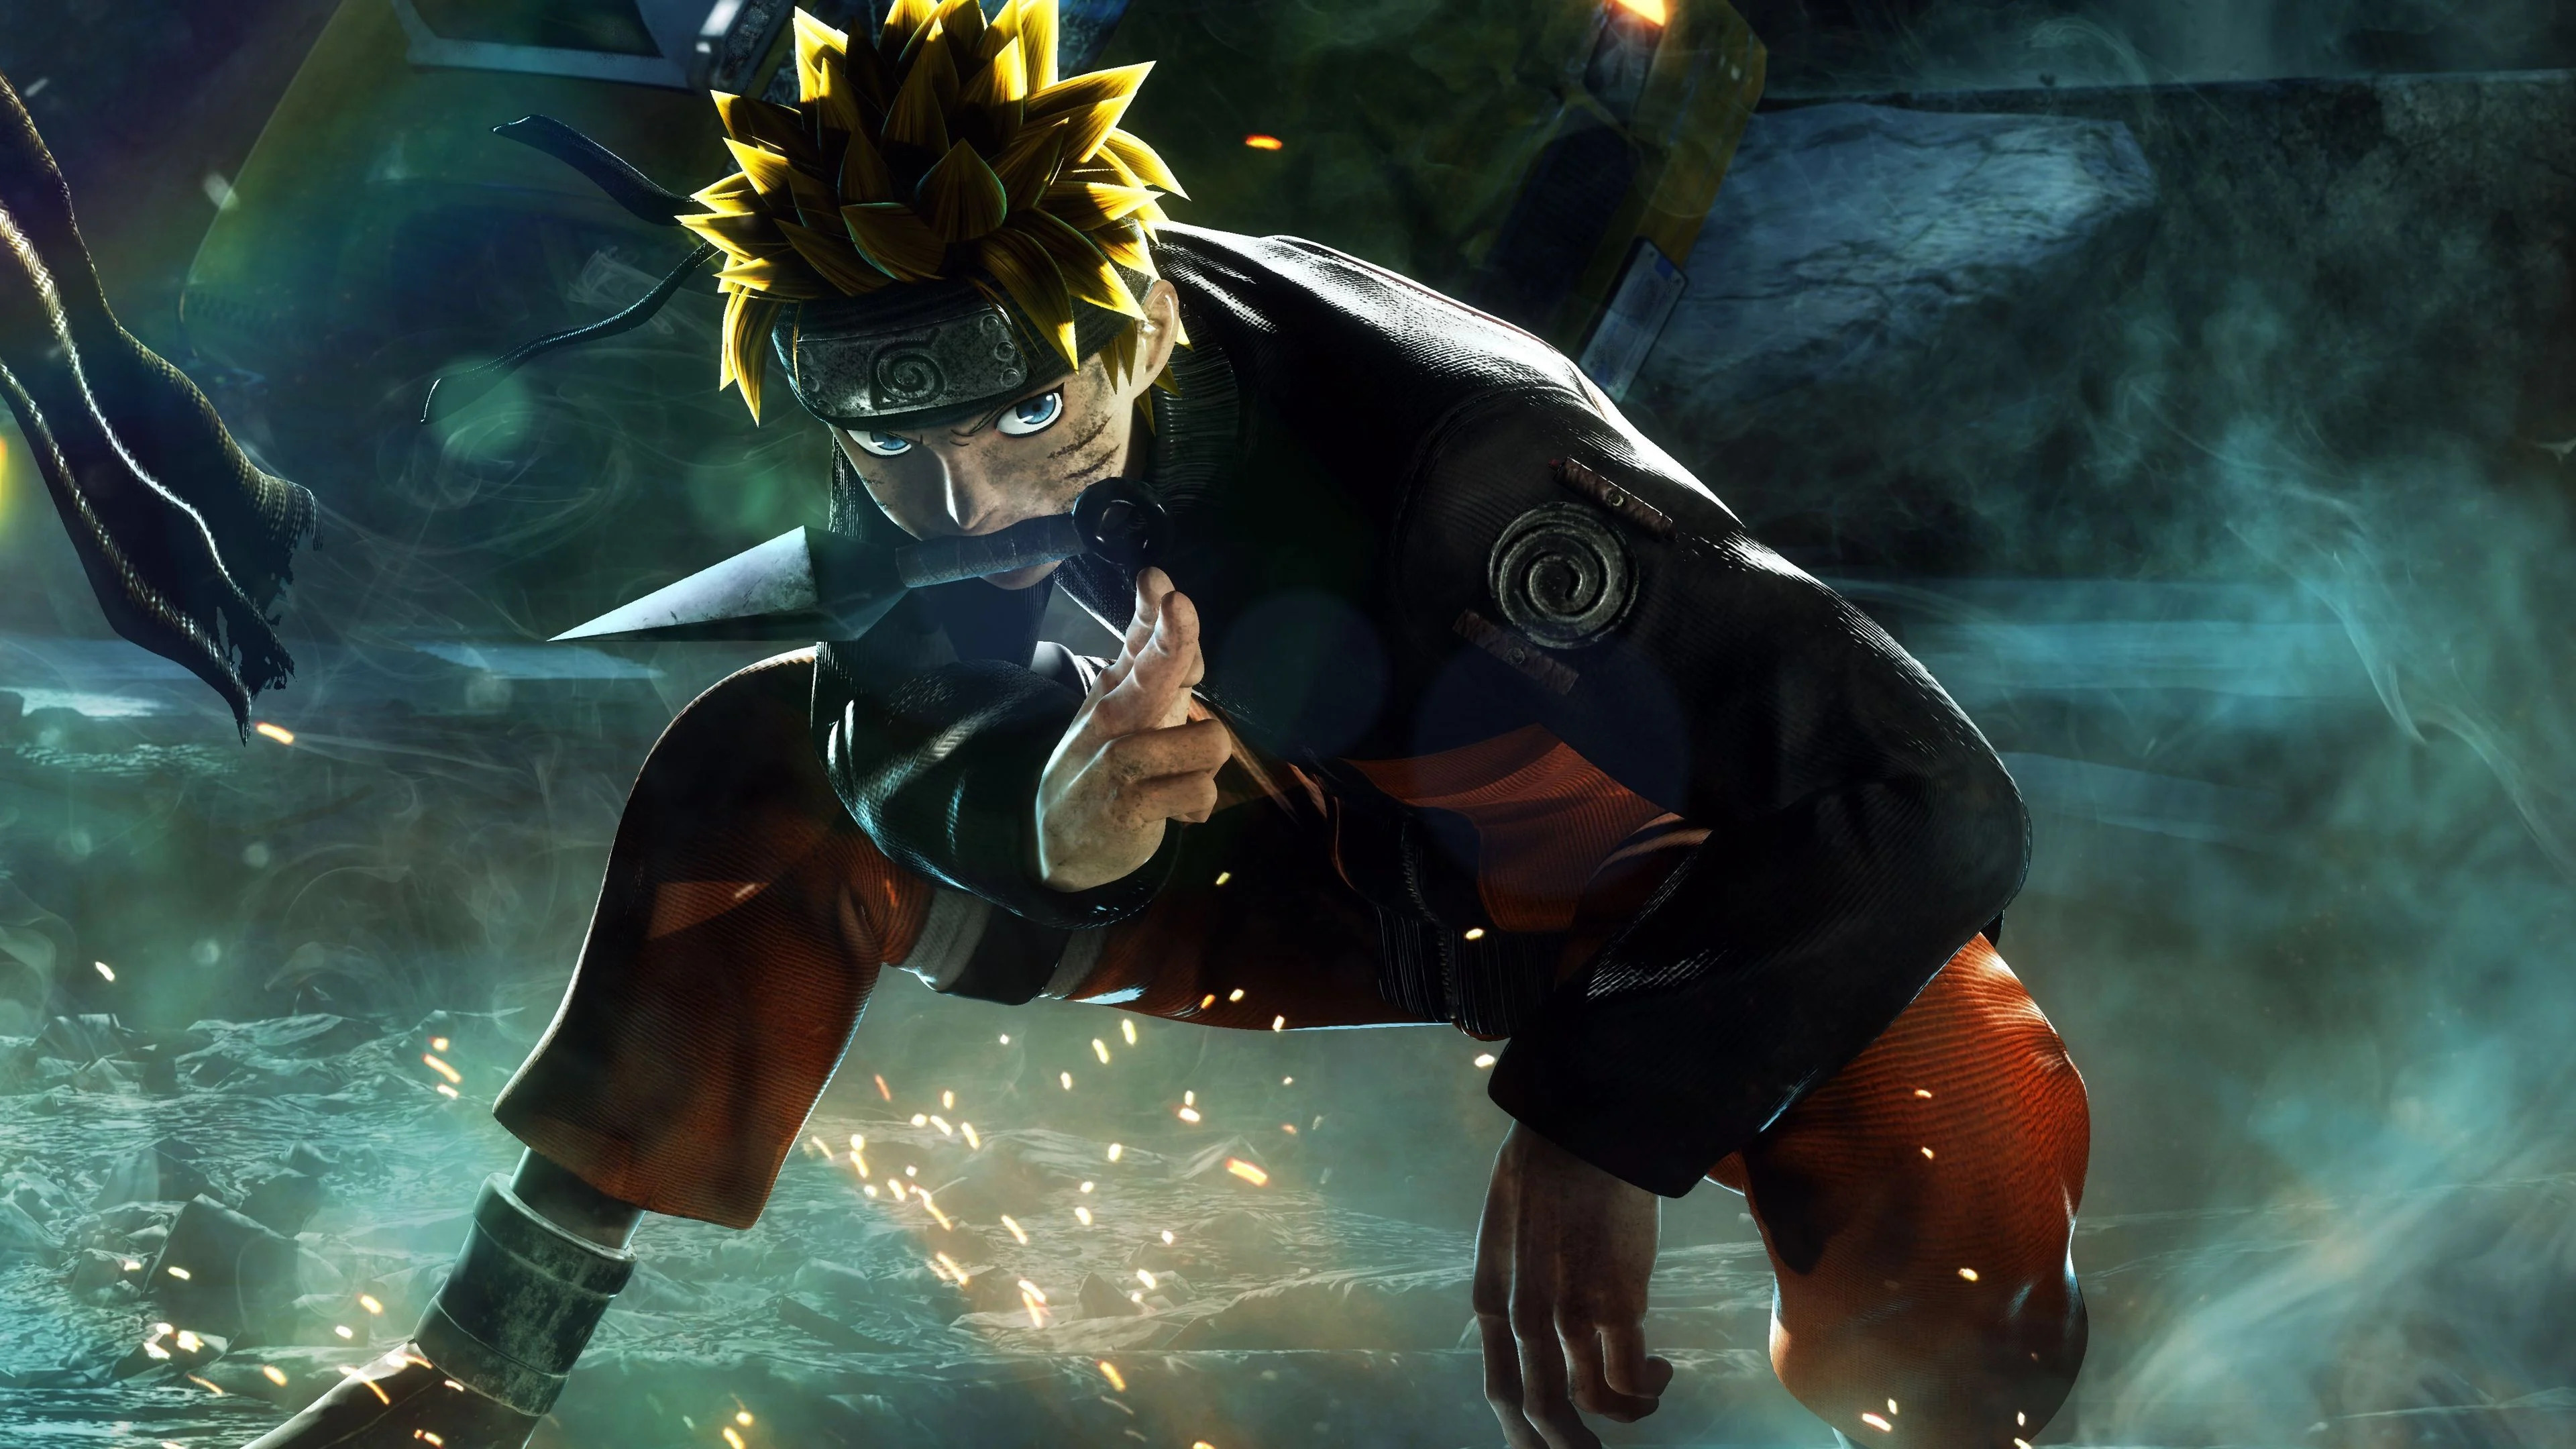 Những hình nền Naruto 3D, 4K chế tạo ngầu đầy cá tính, dành cho những fan cuồng của anh chàng Naruto và các đồng đội. Hình ảnh đậm chất ninja, đầy giữa nghị lực, sức mạnh và tình bạn. Tải và cảm nhận ngay.